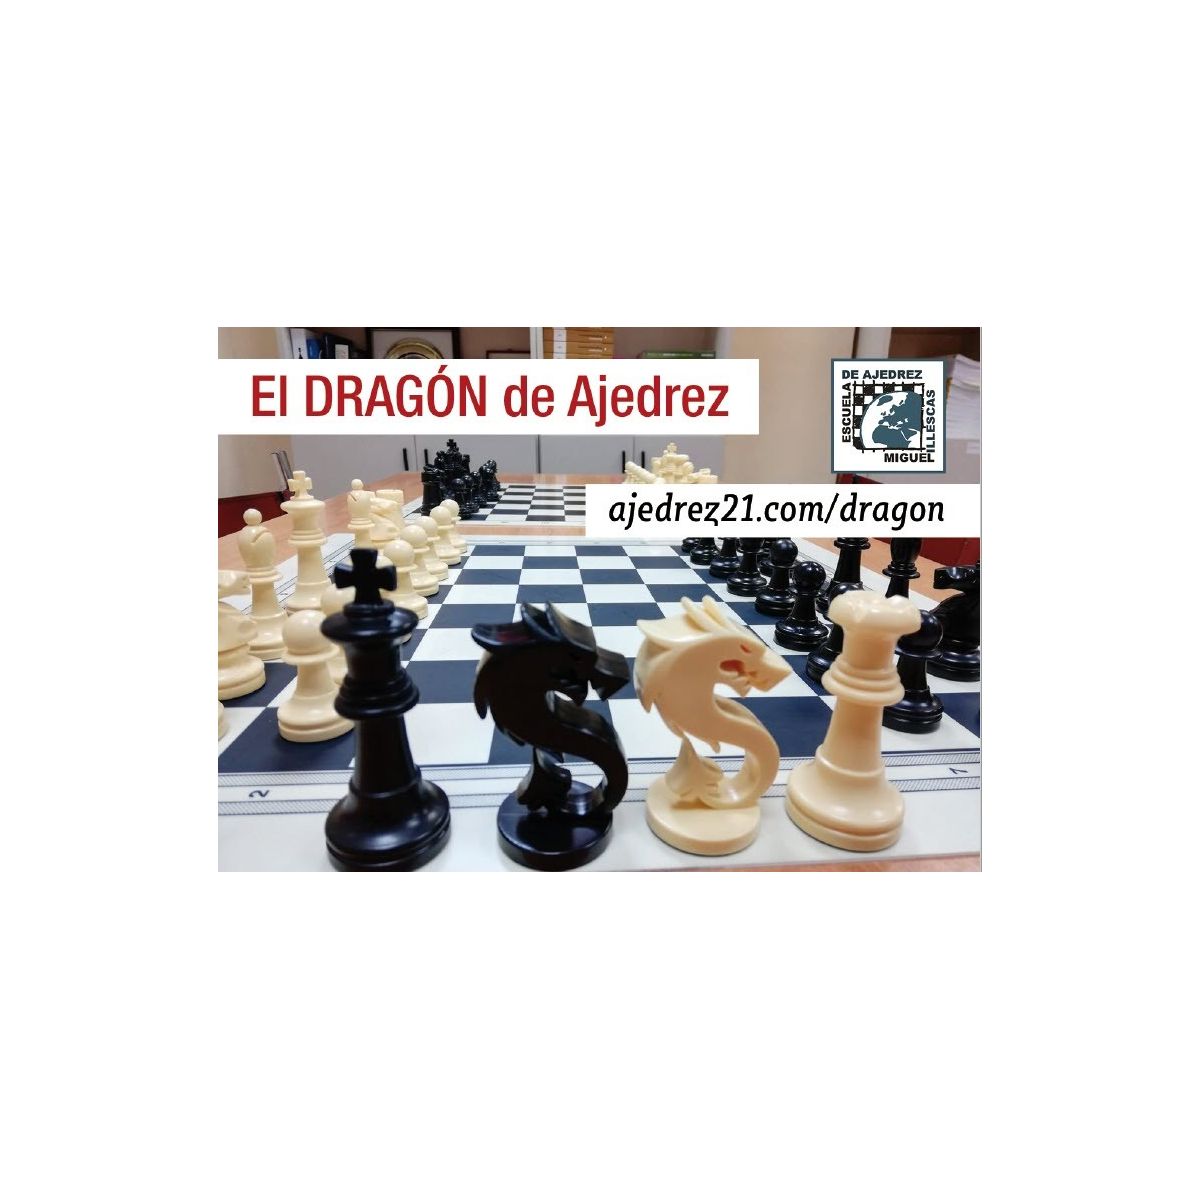 Longspeed 1 Juego de Mini Tablero de ajedrez Plegable de plástico magnético Juego de Tablero de ajedrez Juguete portátil para niños ajedrez magnético Plegado-Blanco Negro 